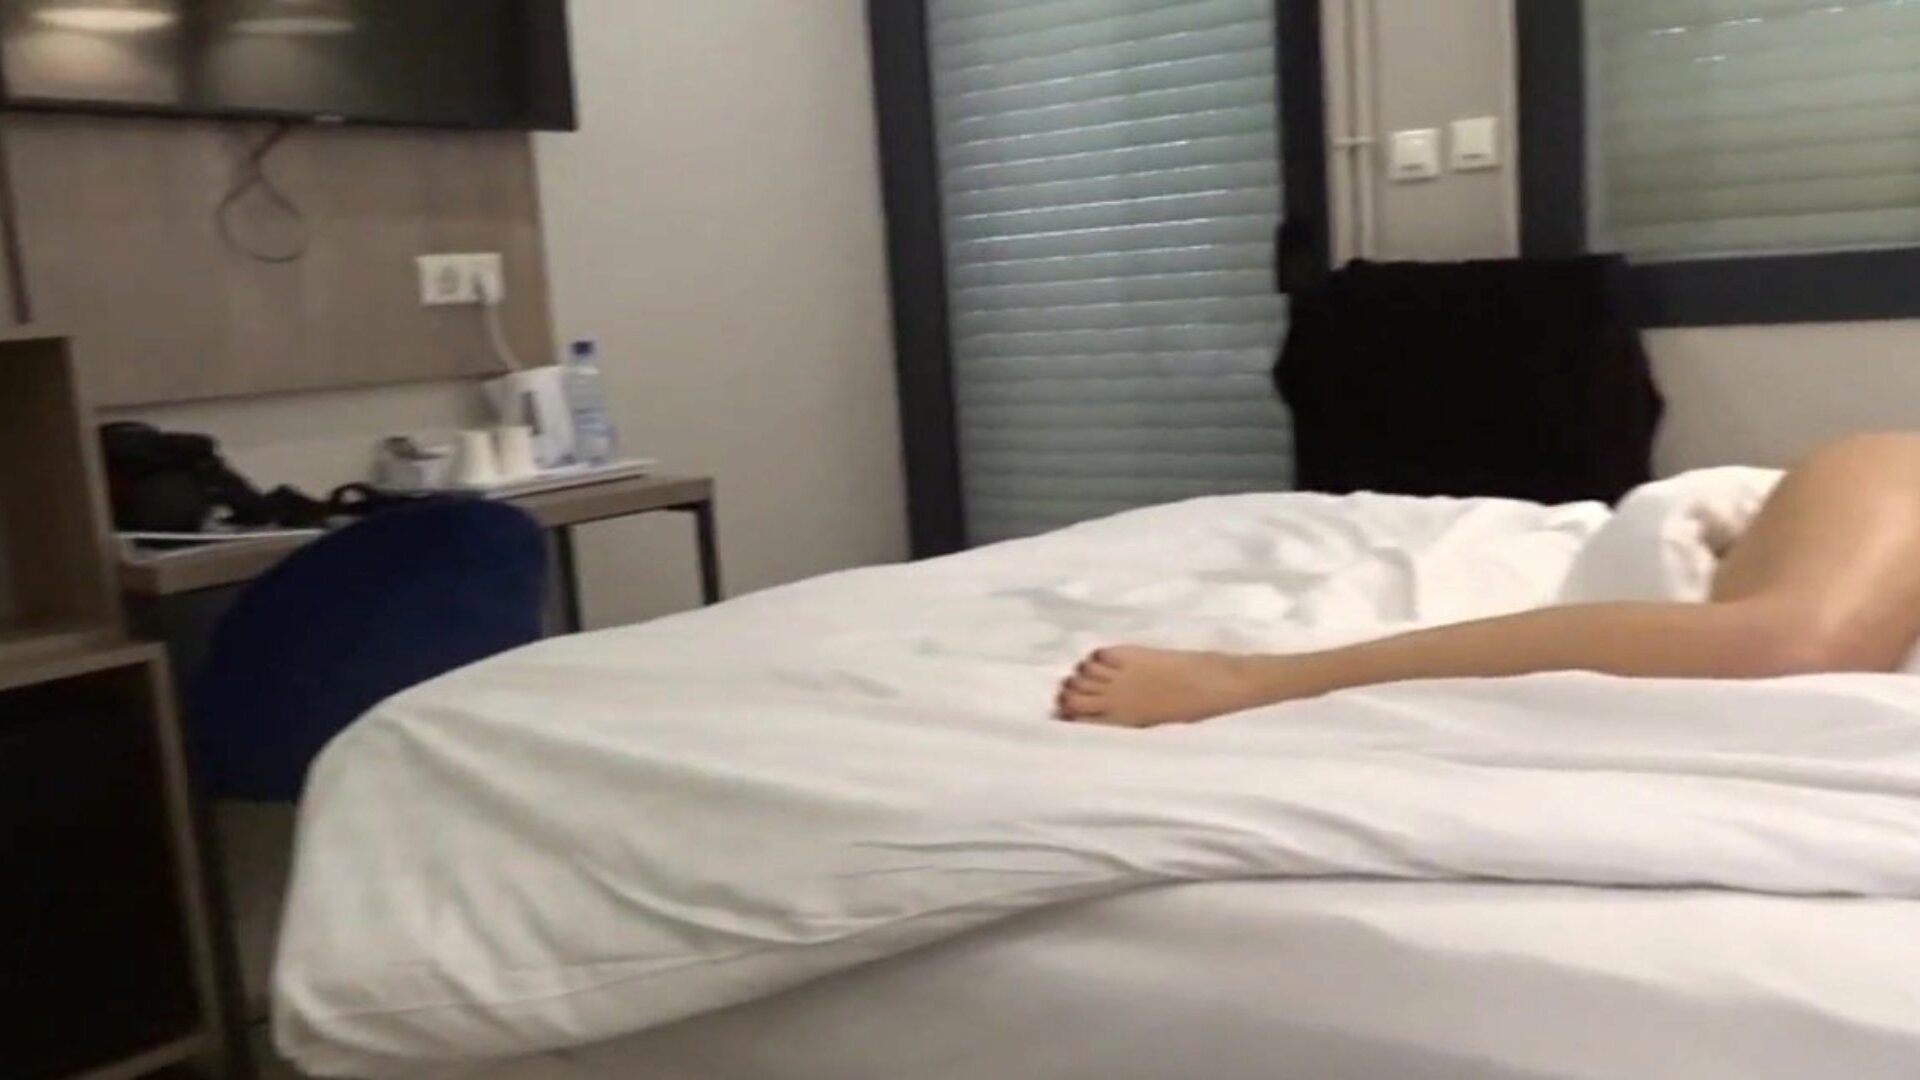 carla-c nahá na hotelovém videu, kde jsem svlečená na své posteli v hotelovém pokoji pro hosty a v koupelně